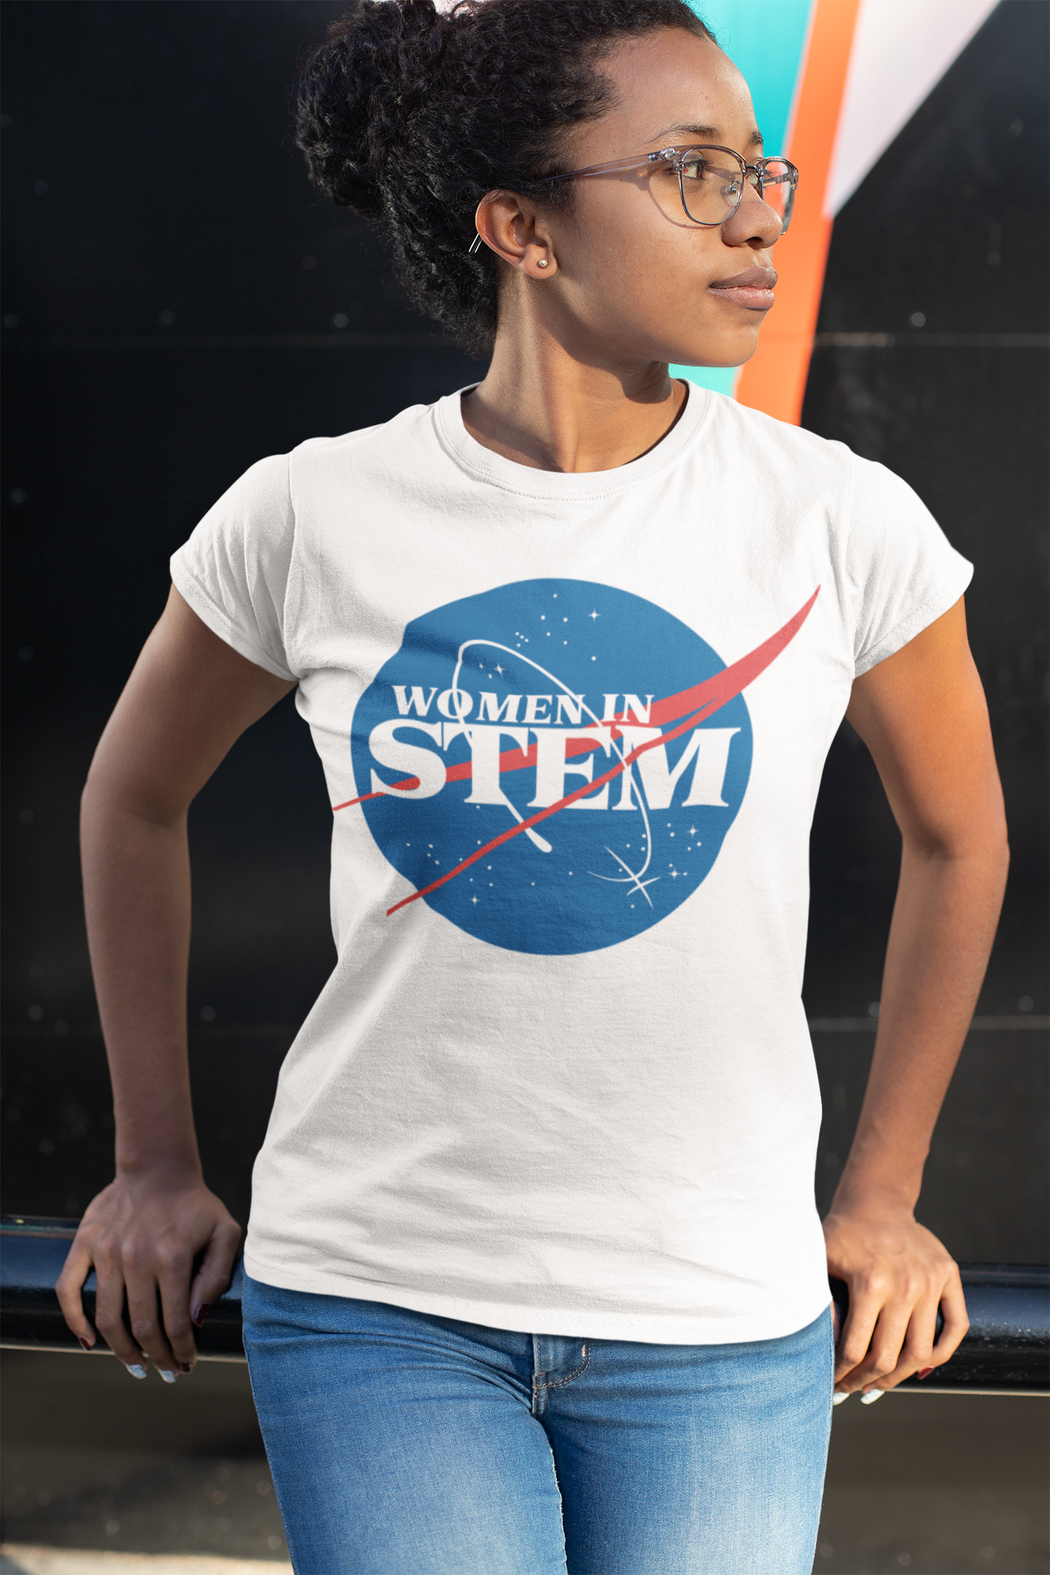 Women in STEM -- Women's T-Shirt